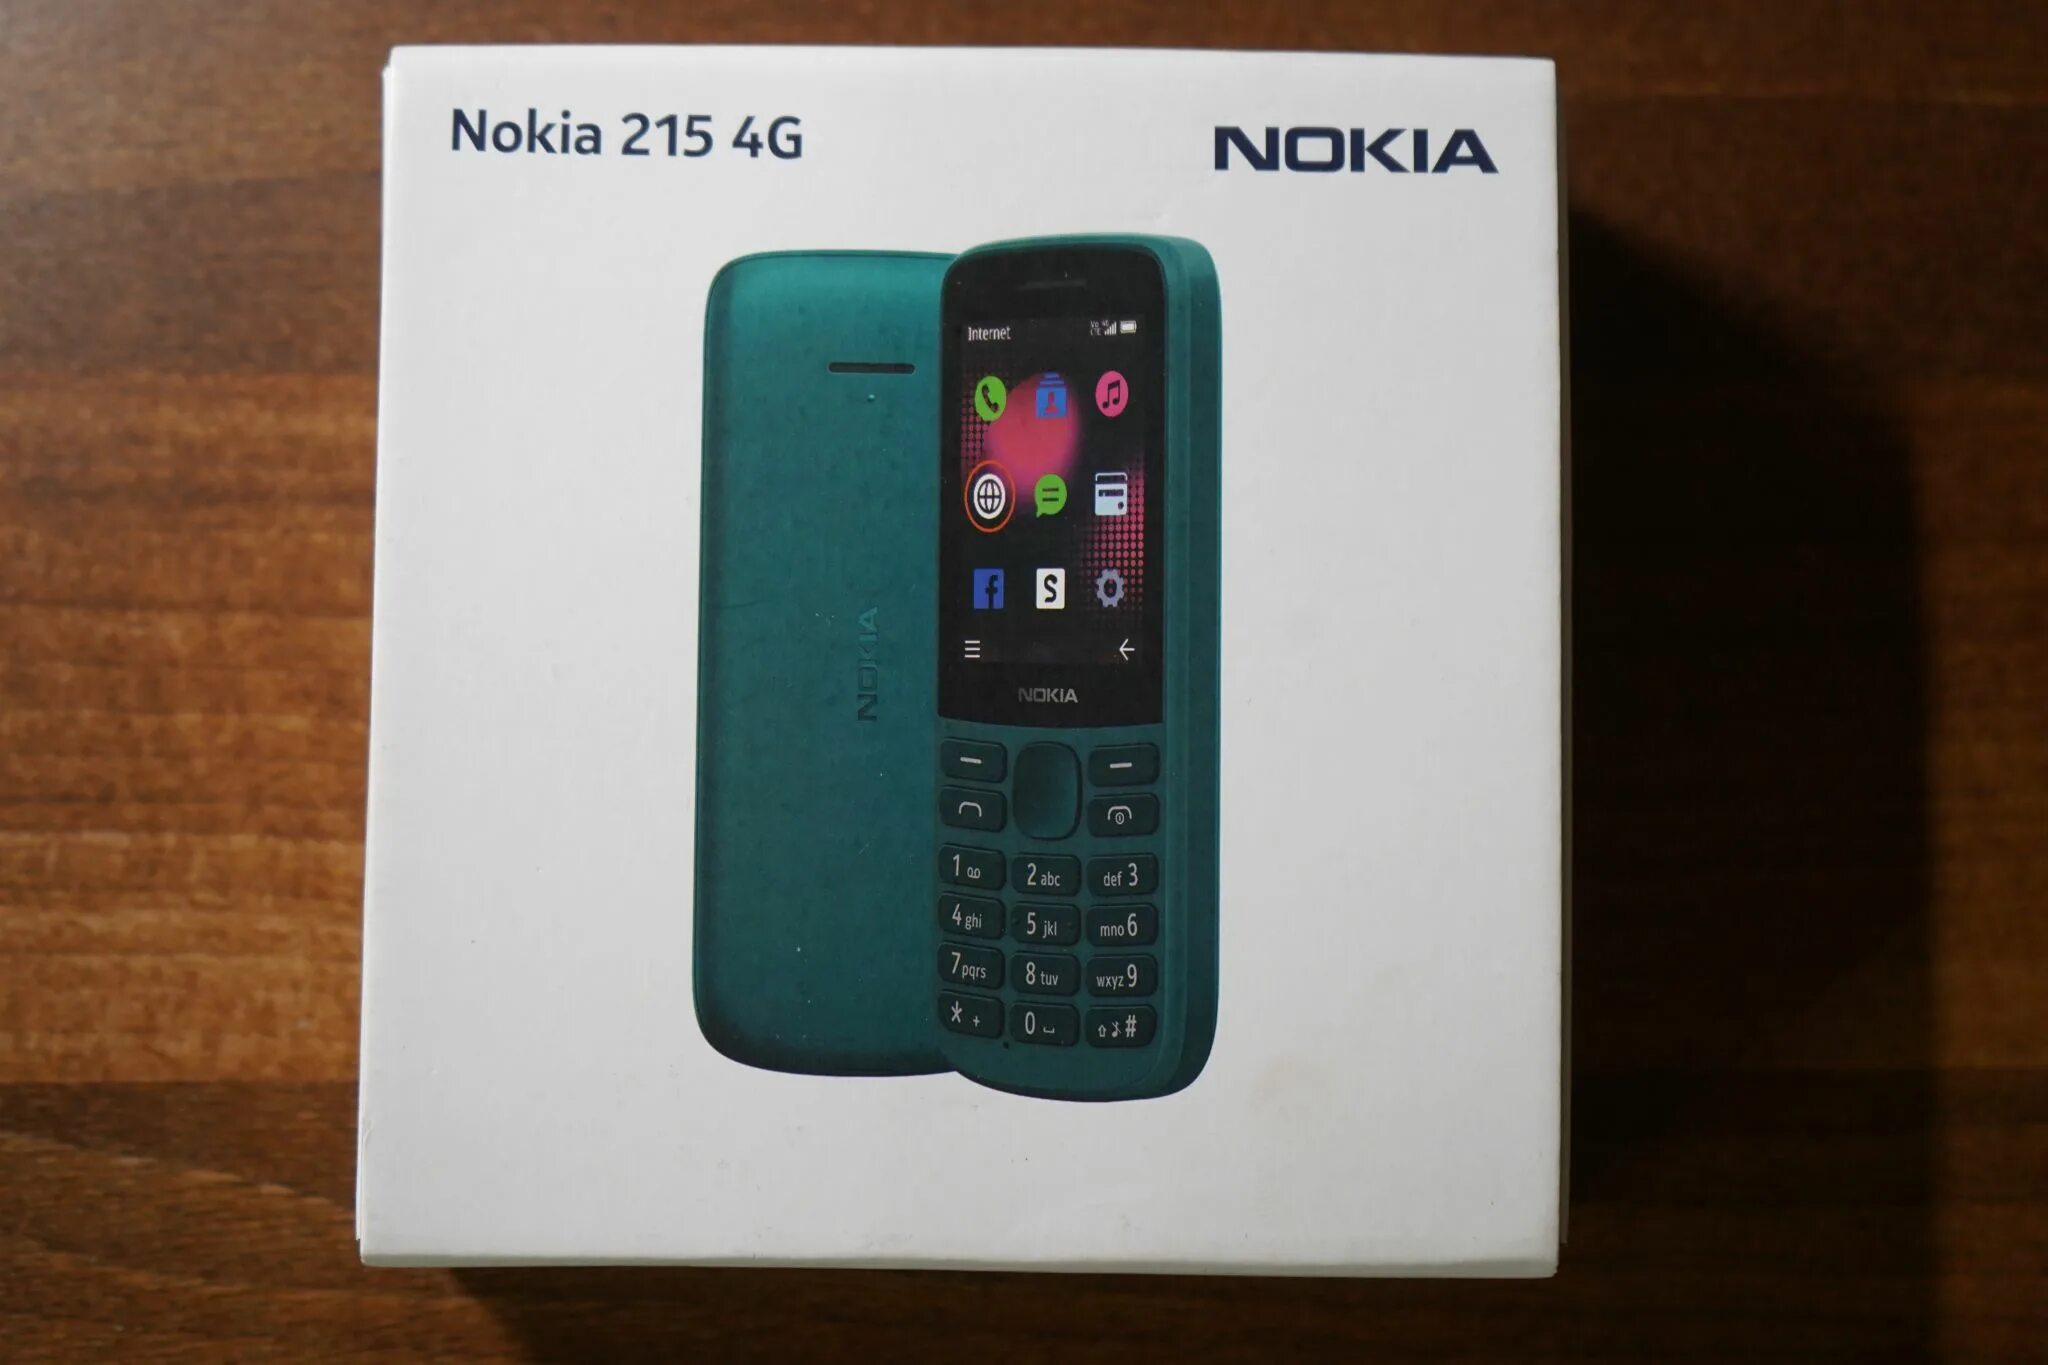 Нокия 215 купить. Nokia 215 4g Dual SIM. Nokia 215 4g DS (ta-1272). Nokia 215 4g (ta-1272) Black. Nokia 215 4g 2 SIM.